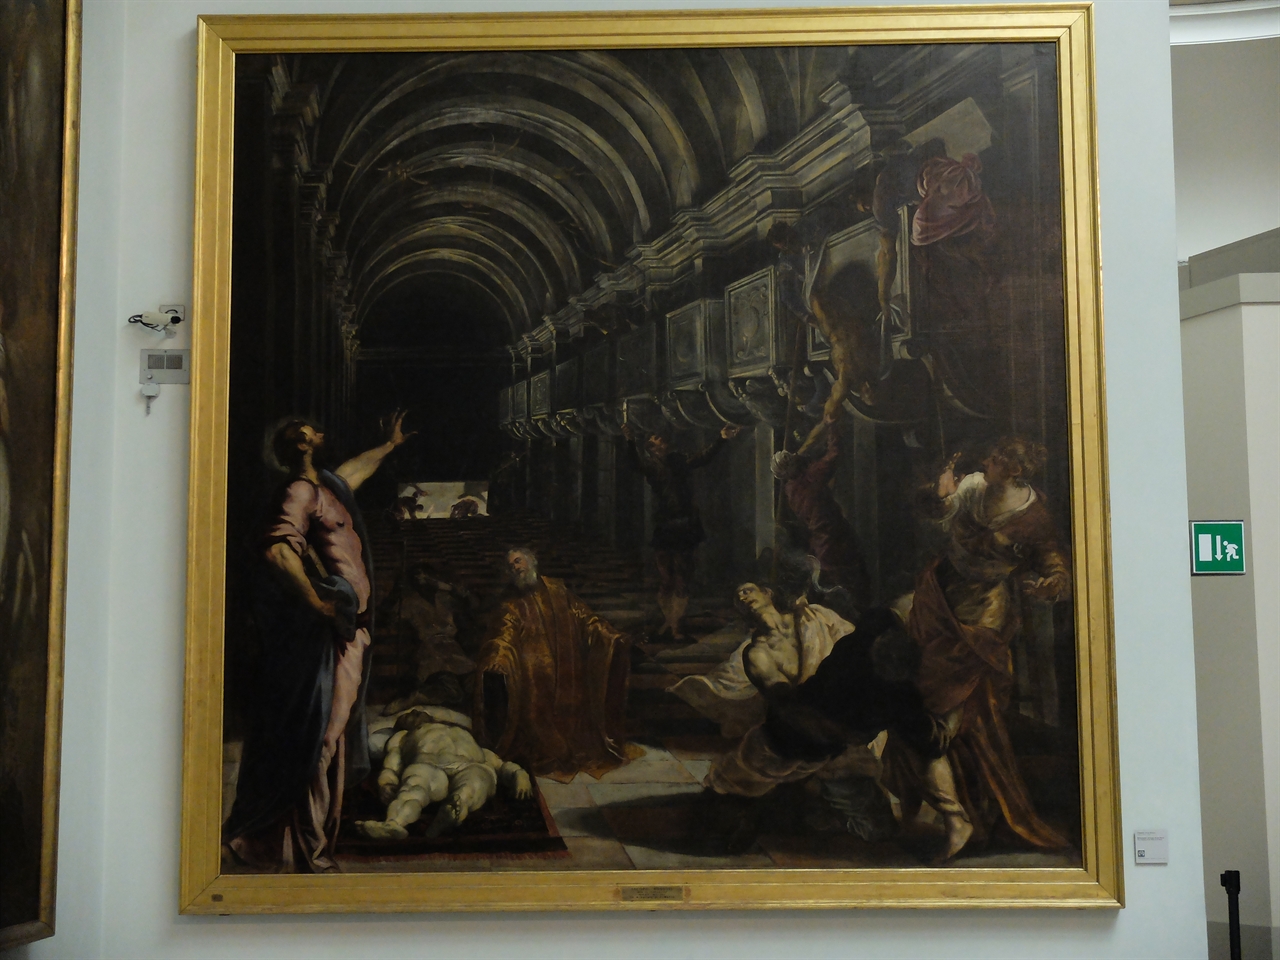 틴토레토, '성 마르코의 시신을 발견하다', 밀라노 브레라 미술관. 르네상스가 추구했던 균형과 조화를 넘어 격정적이고 극적인 구도를 제시한 틴토레토의 대표작 성 마르코 연작 중 하나입니다.